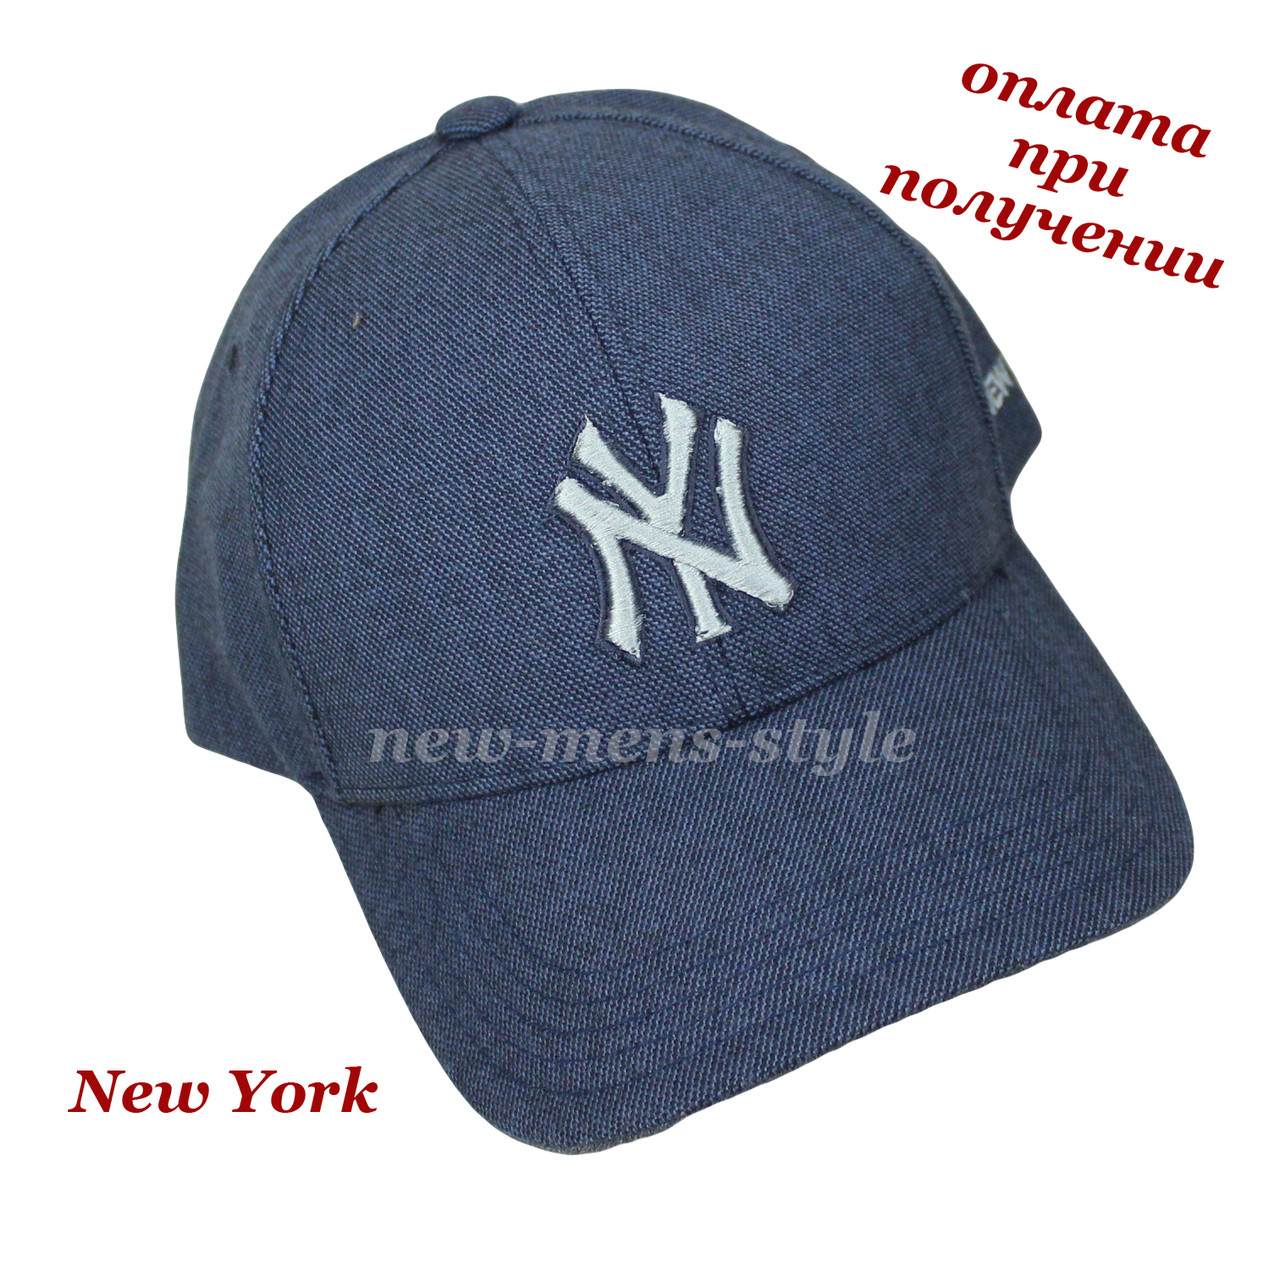 Мужская модная стильная спортивная кепка бейсболка блайзер NY New York